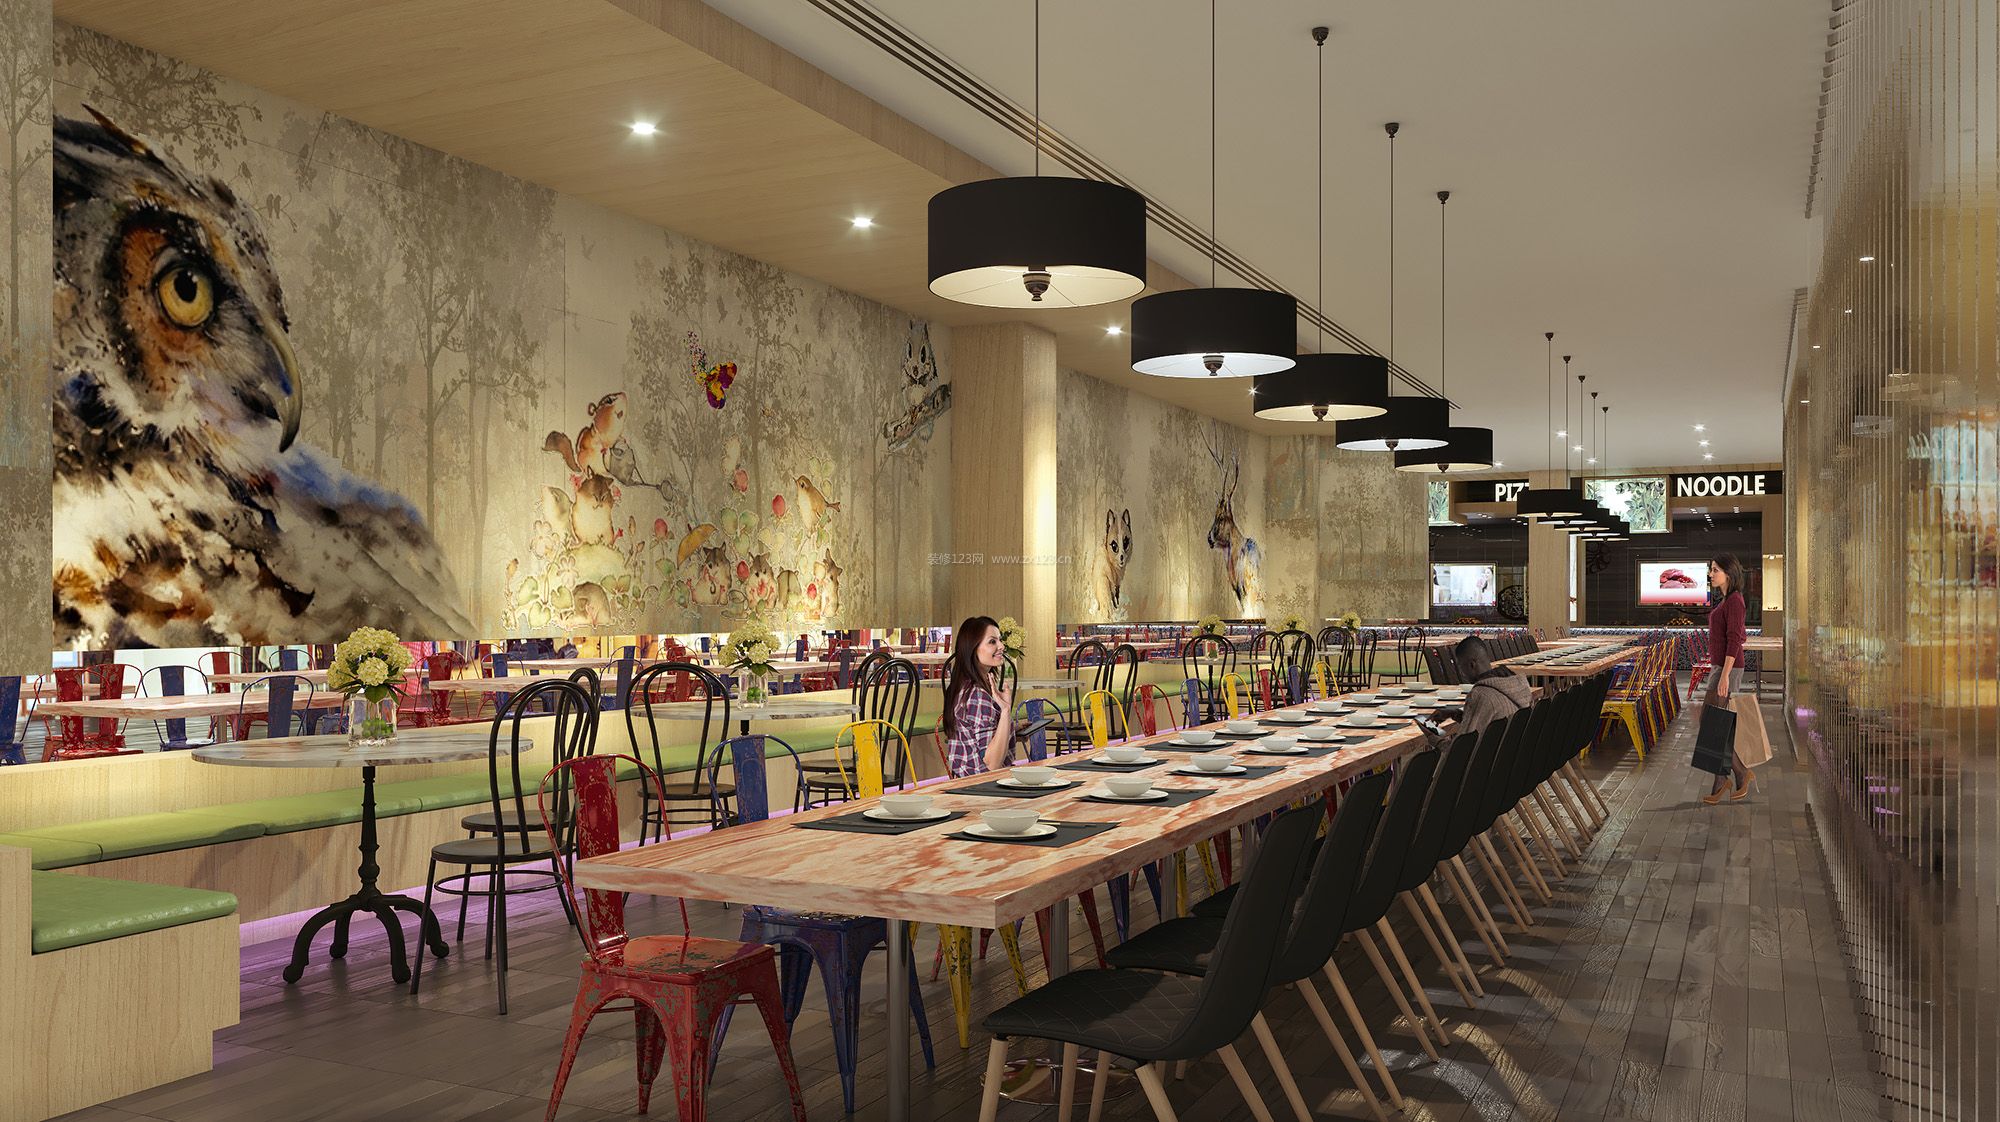 2017商场创意餐厅背景墙设计装修效果图大全